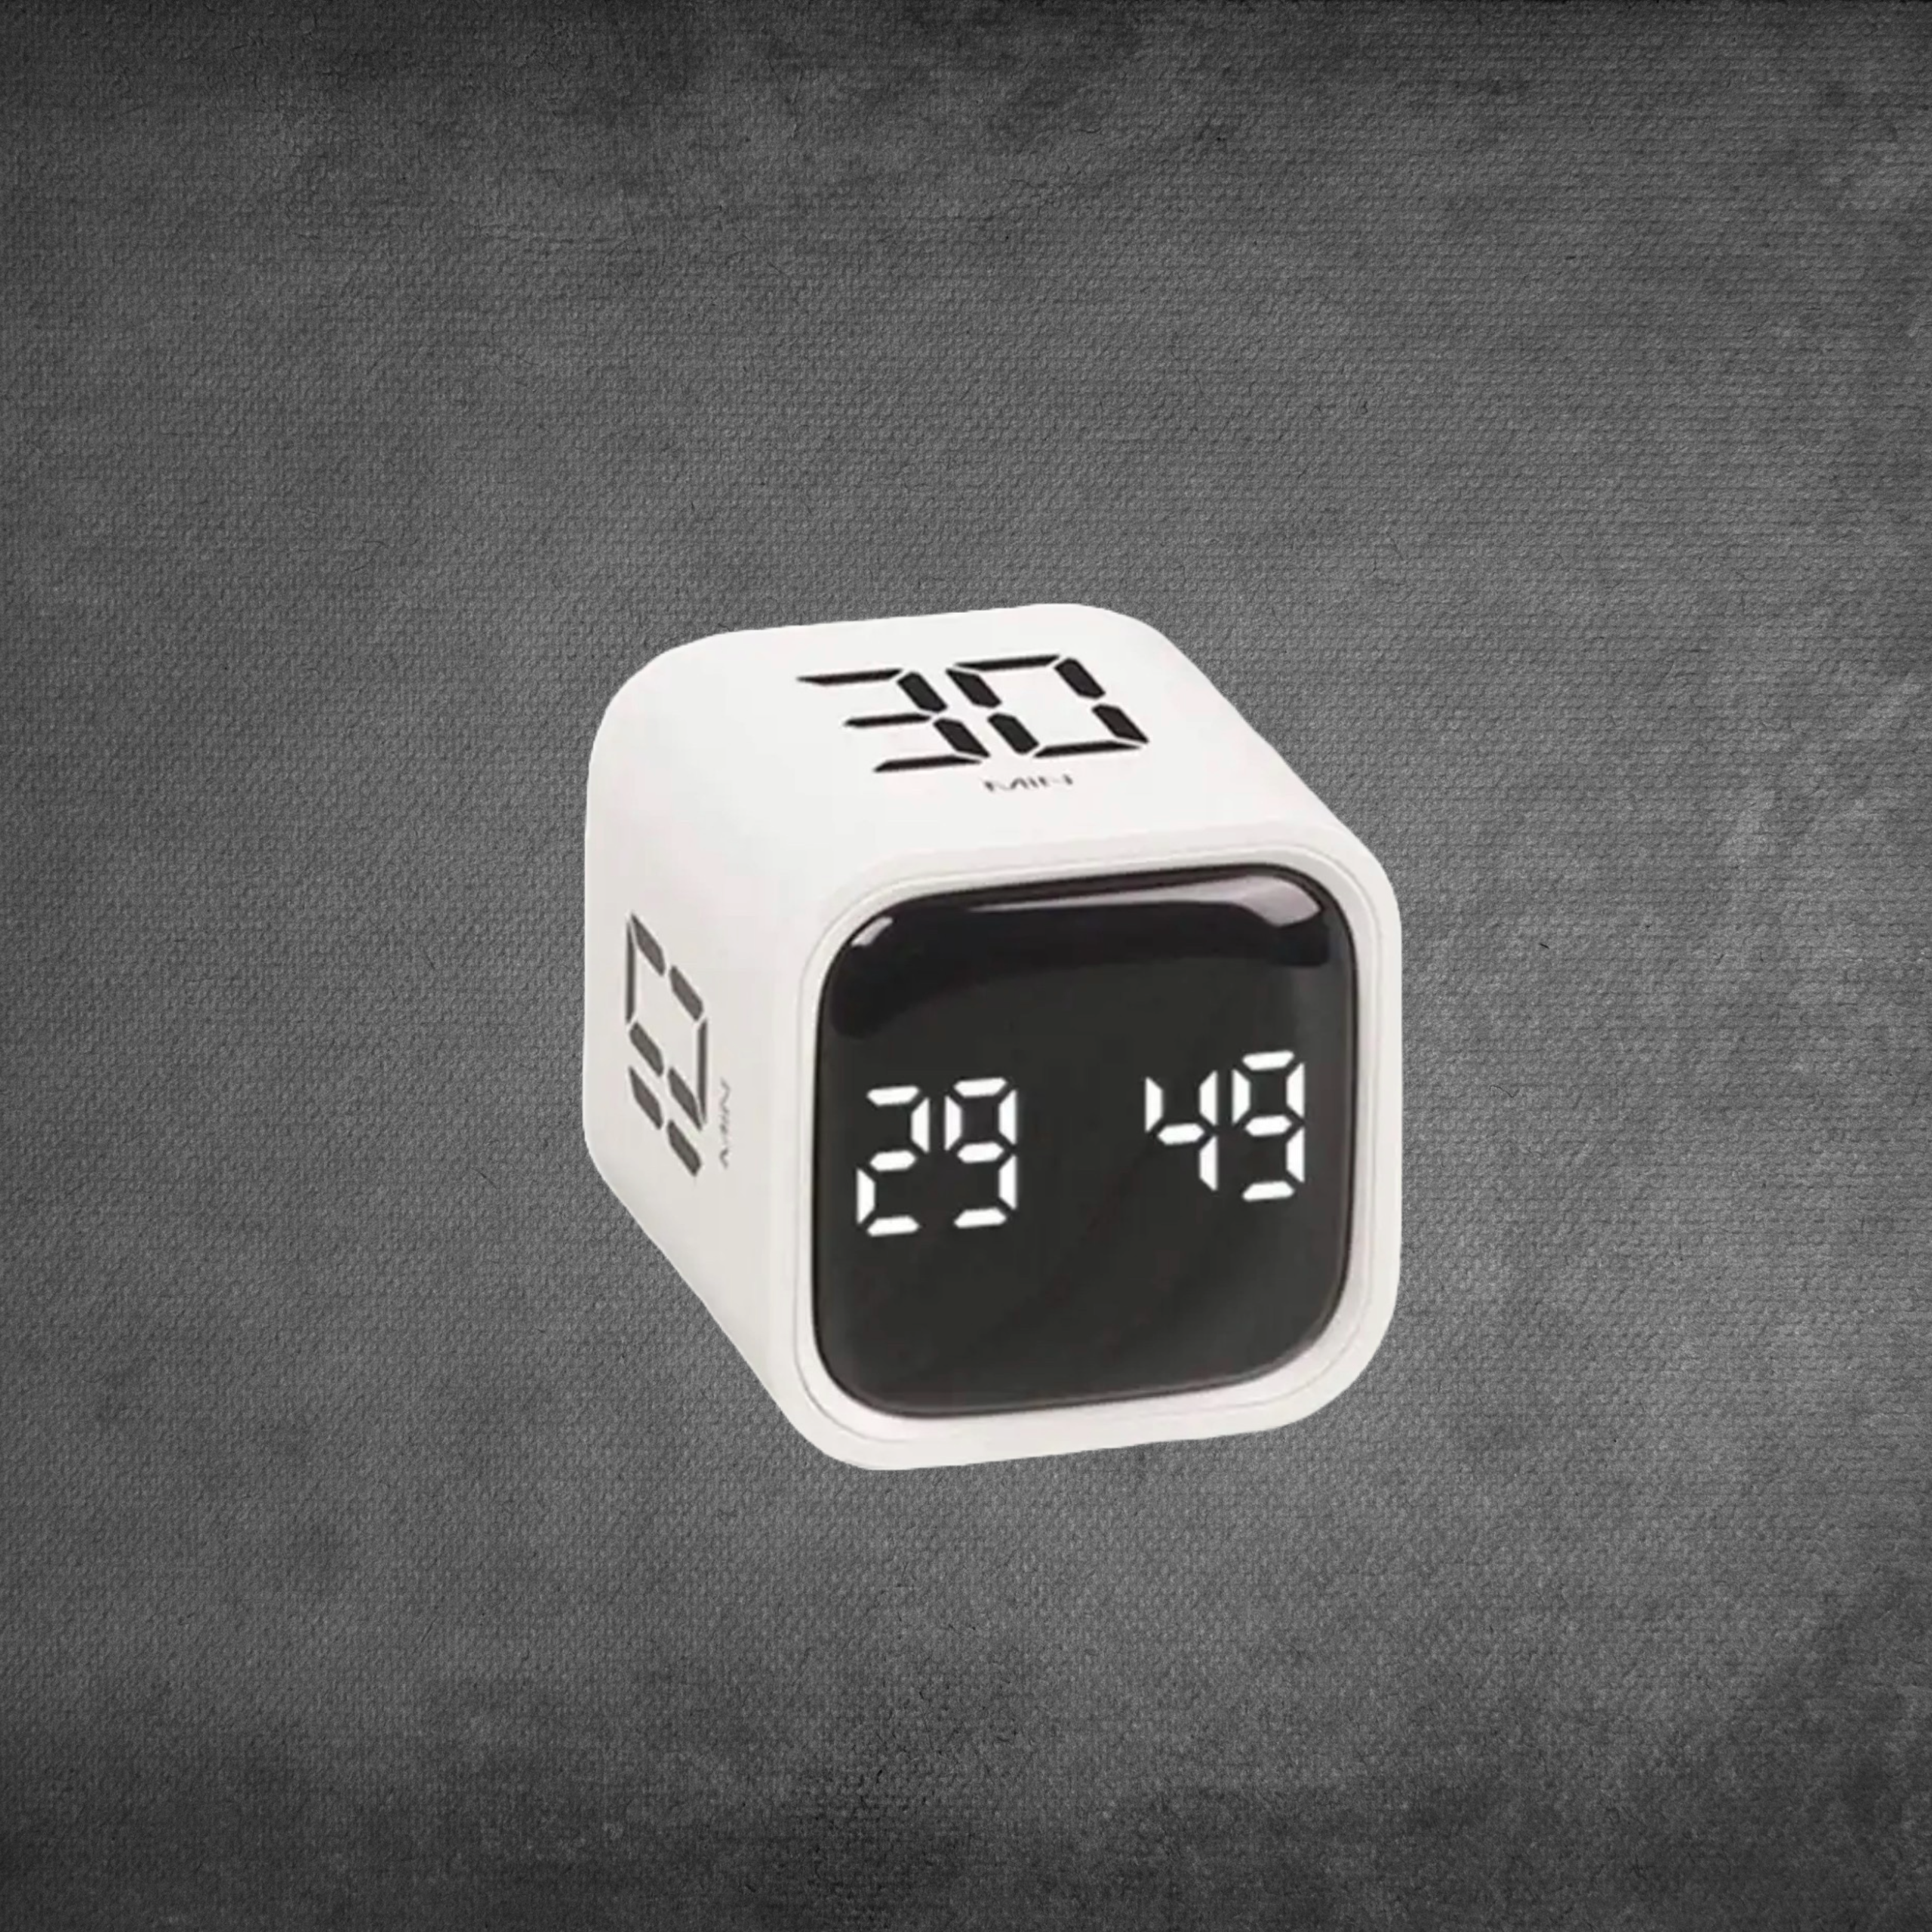 Cube Flip Gravity Sensor Timer